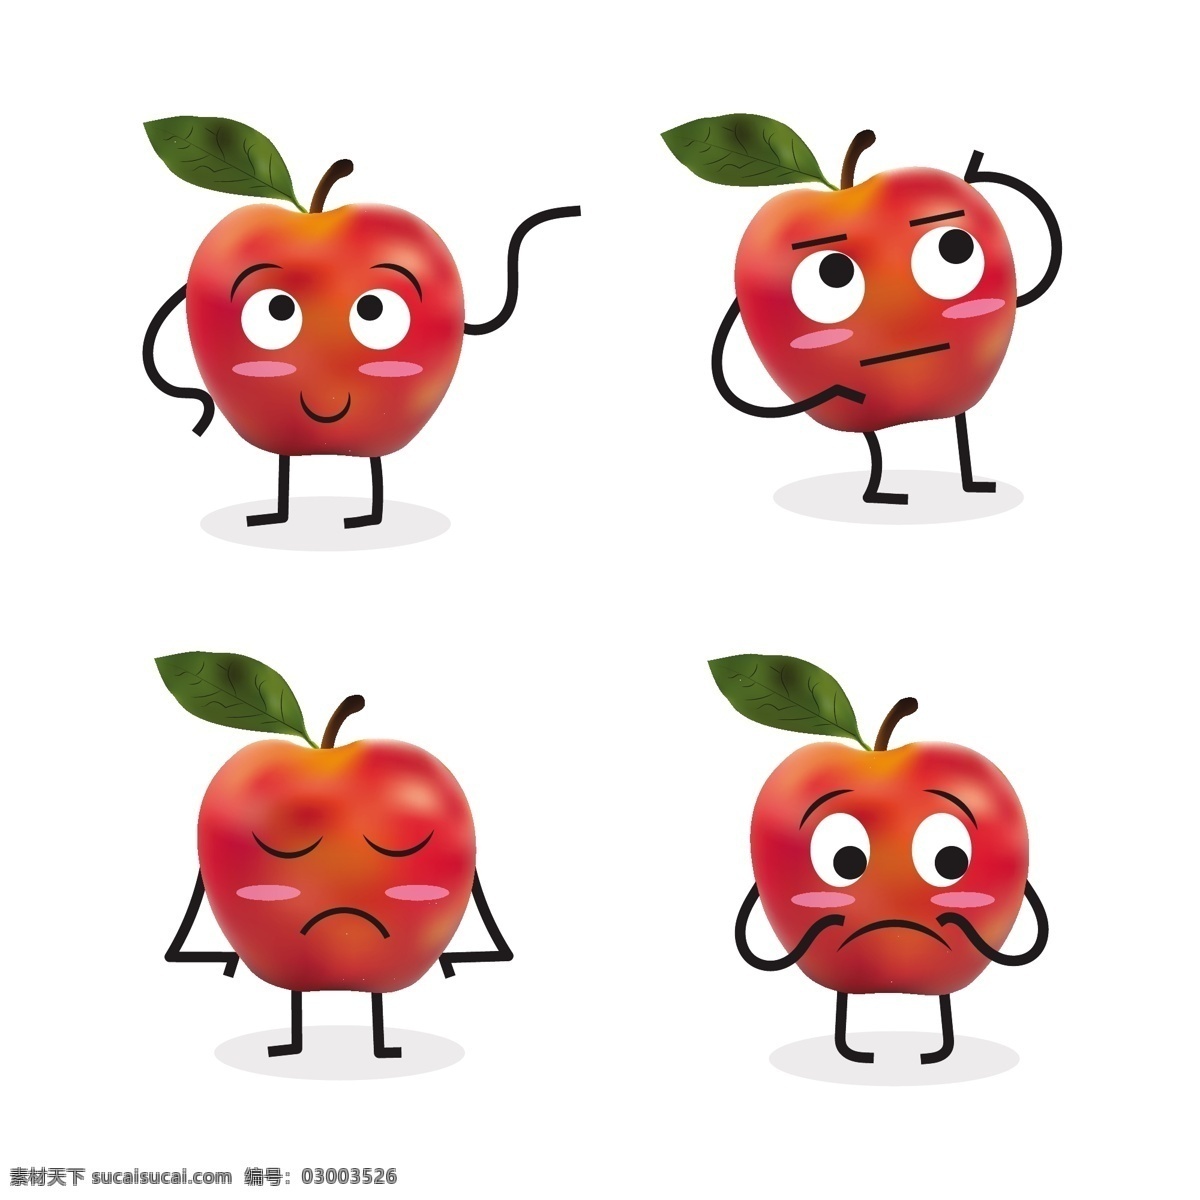 苹果表情 苹果 表情 笑脸 卡哇伊 水果 有趣 搞怪 聊天表情 卡通苹果 卡通设计